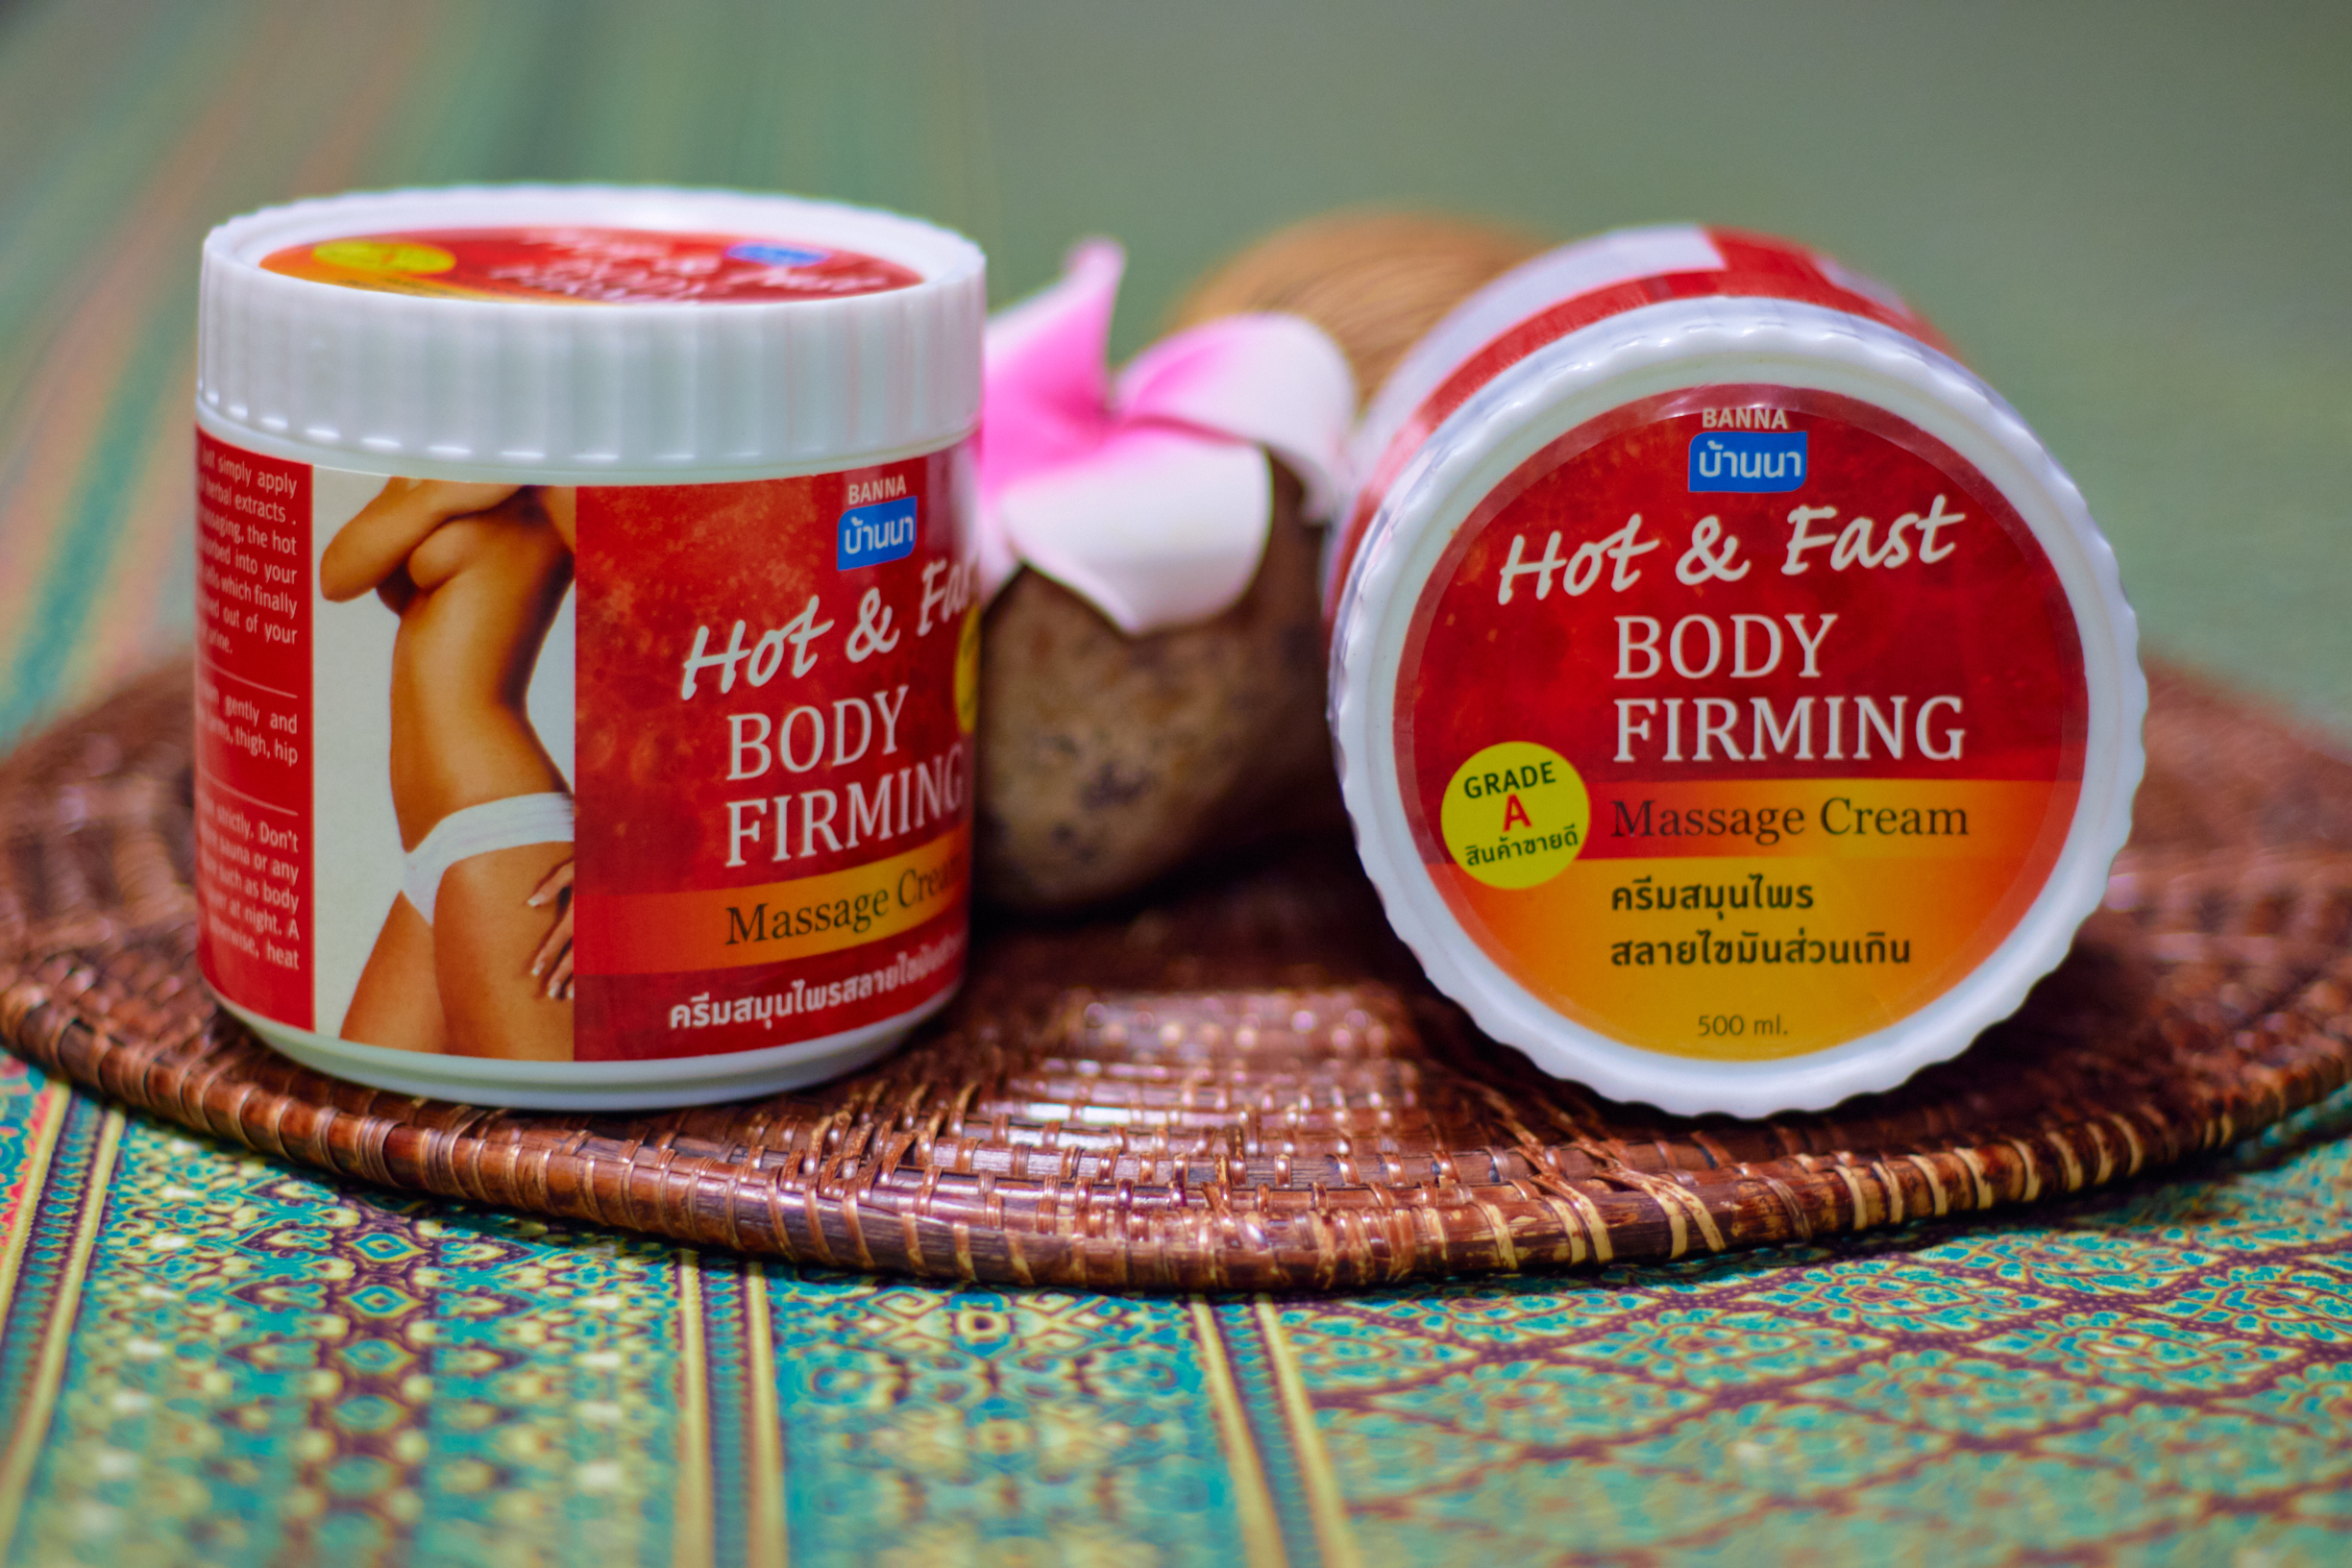 Моделирующий согревающий антицеллюлитный Тайский массажный крем Banna Hot & Fast Body Firming Massage Cream 500 мл. крем анитицеллюлитный из тайланда